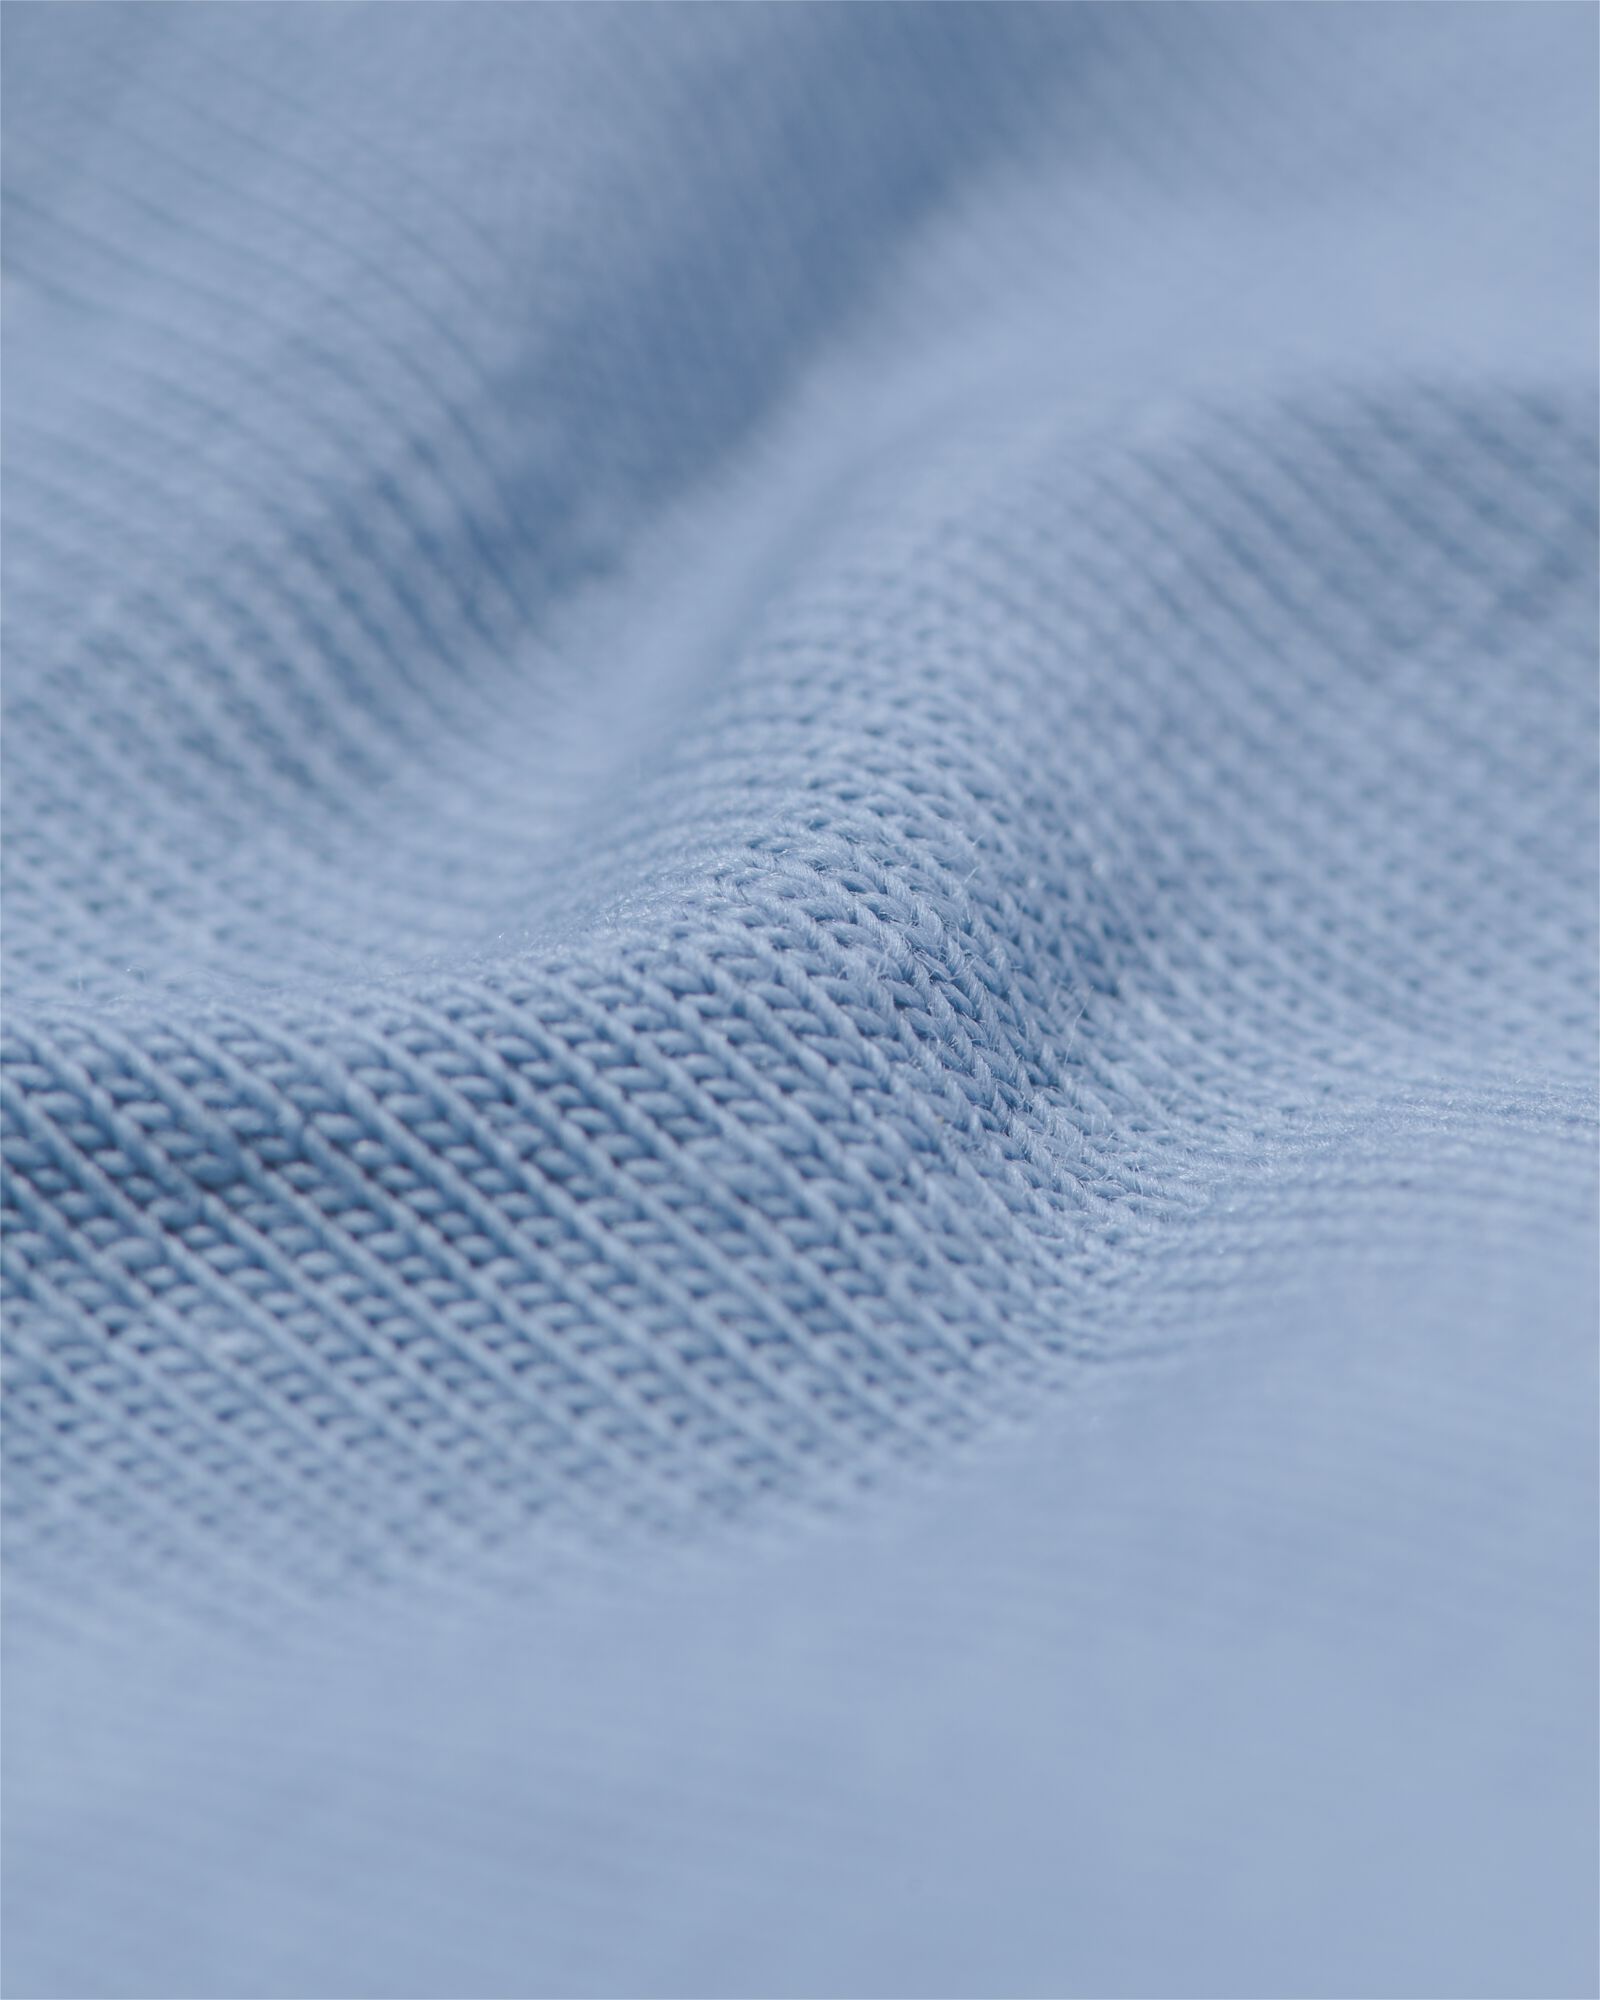 shortie haut en coton stretch pour femme bleu bleu - 19620214BLUE - HEMA